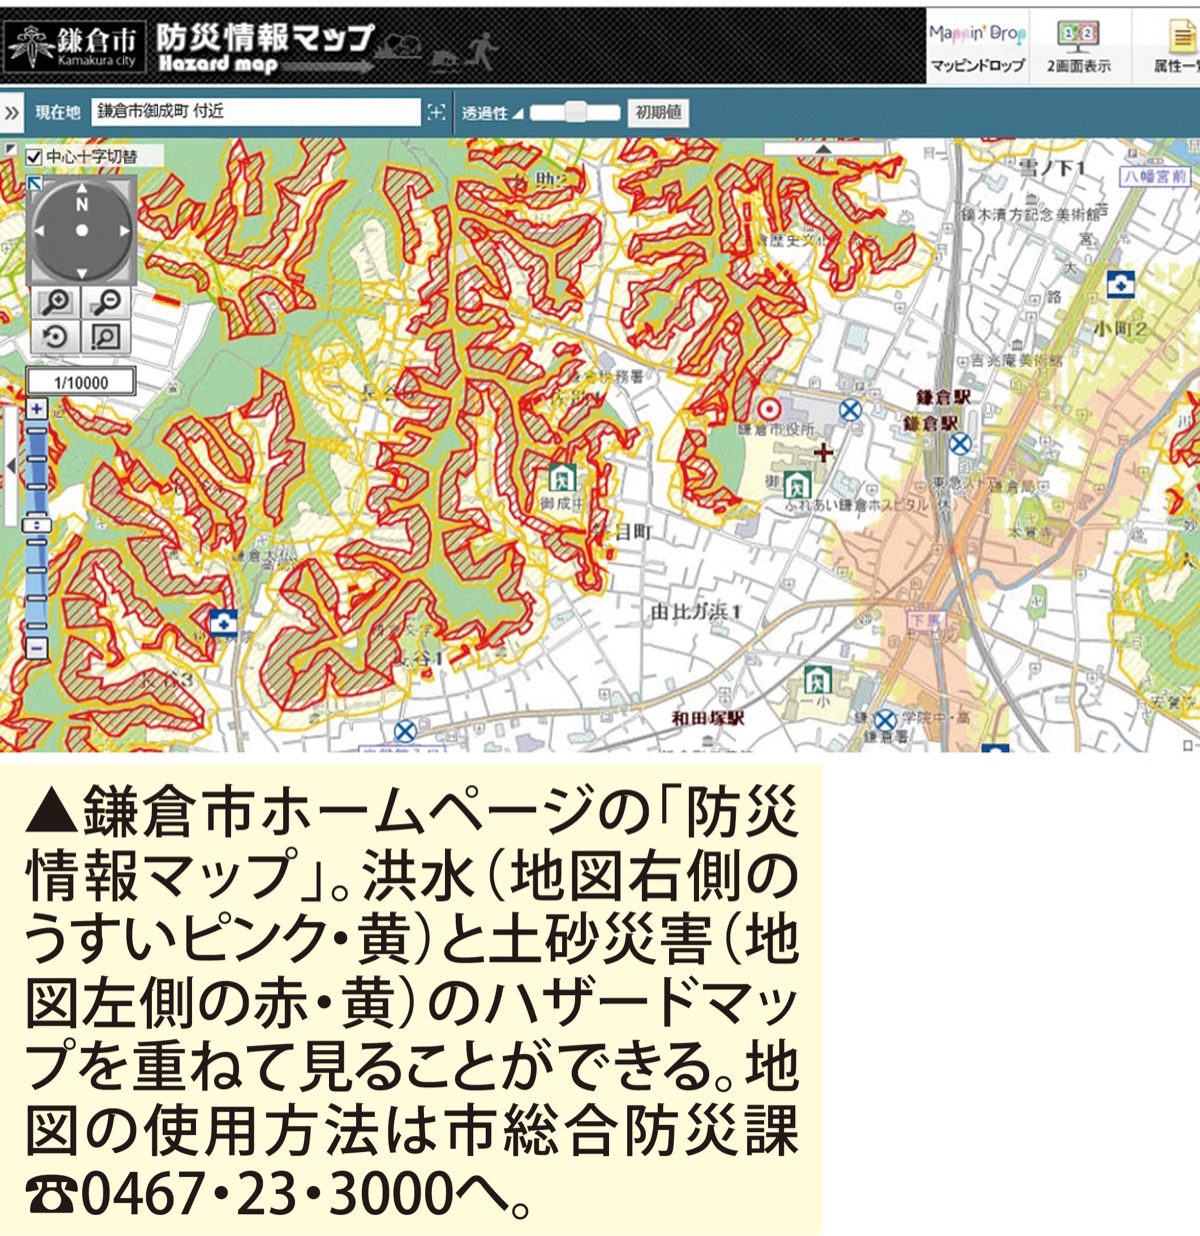 自宅の災害リスクは 鎌倉市防災情報マップ 更新 鎌倉 タウンニュース